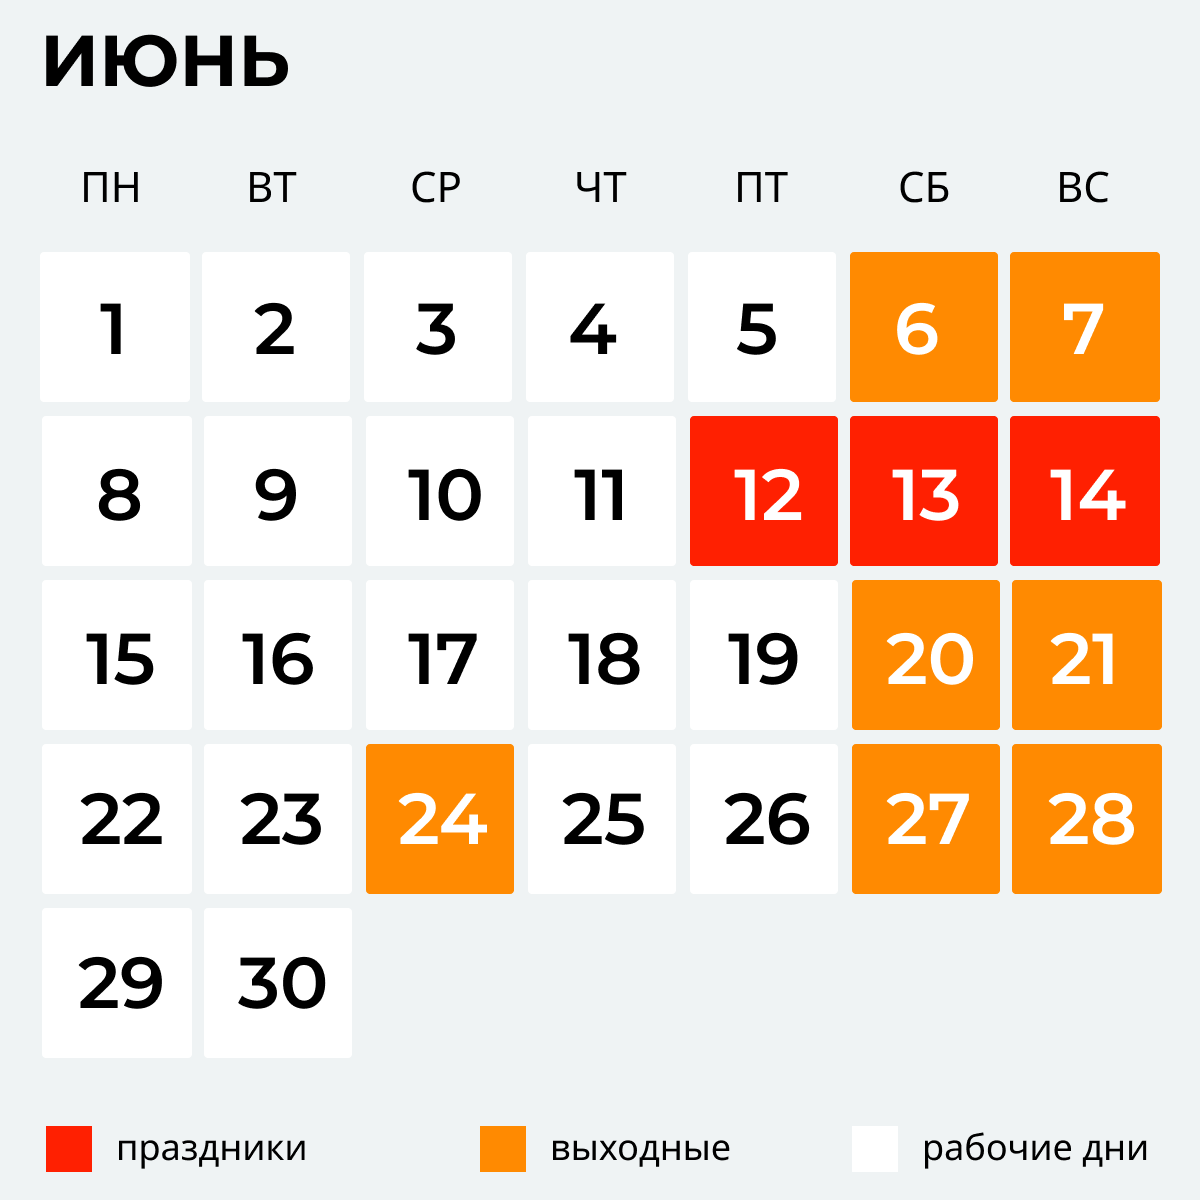 23 октября рф. Праздники в июне. Календарь праздников на июнь. Выходные в июне. Нерабочие дни в июне.